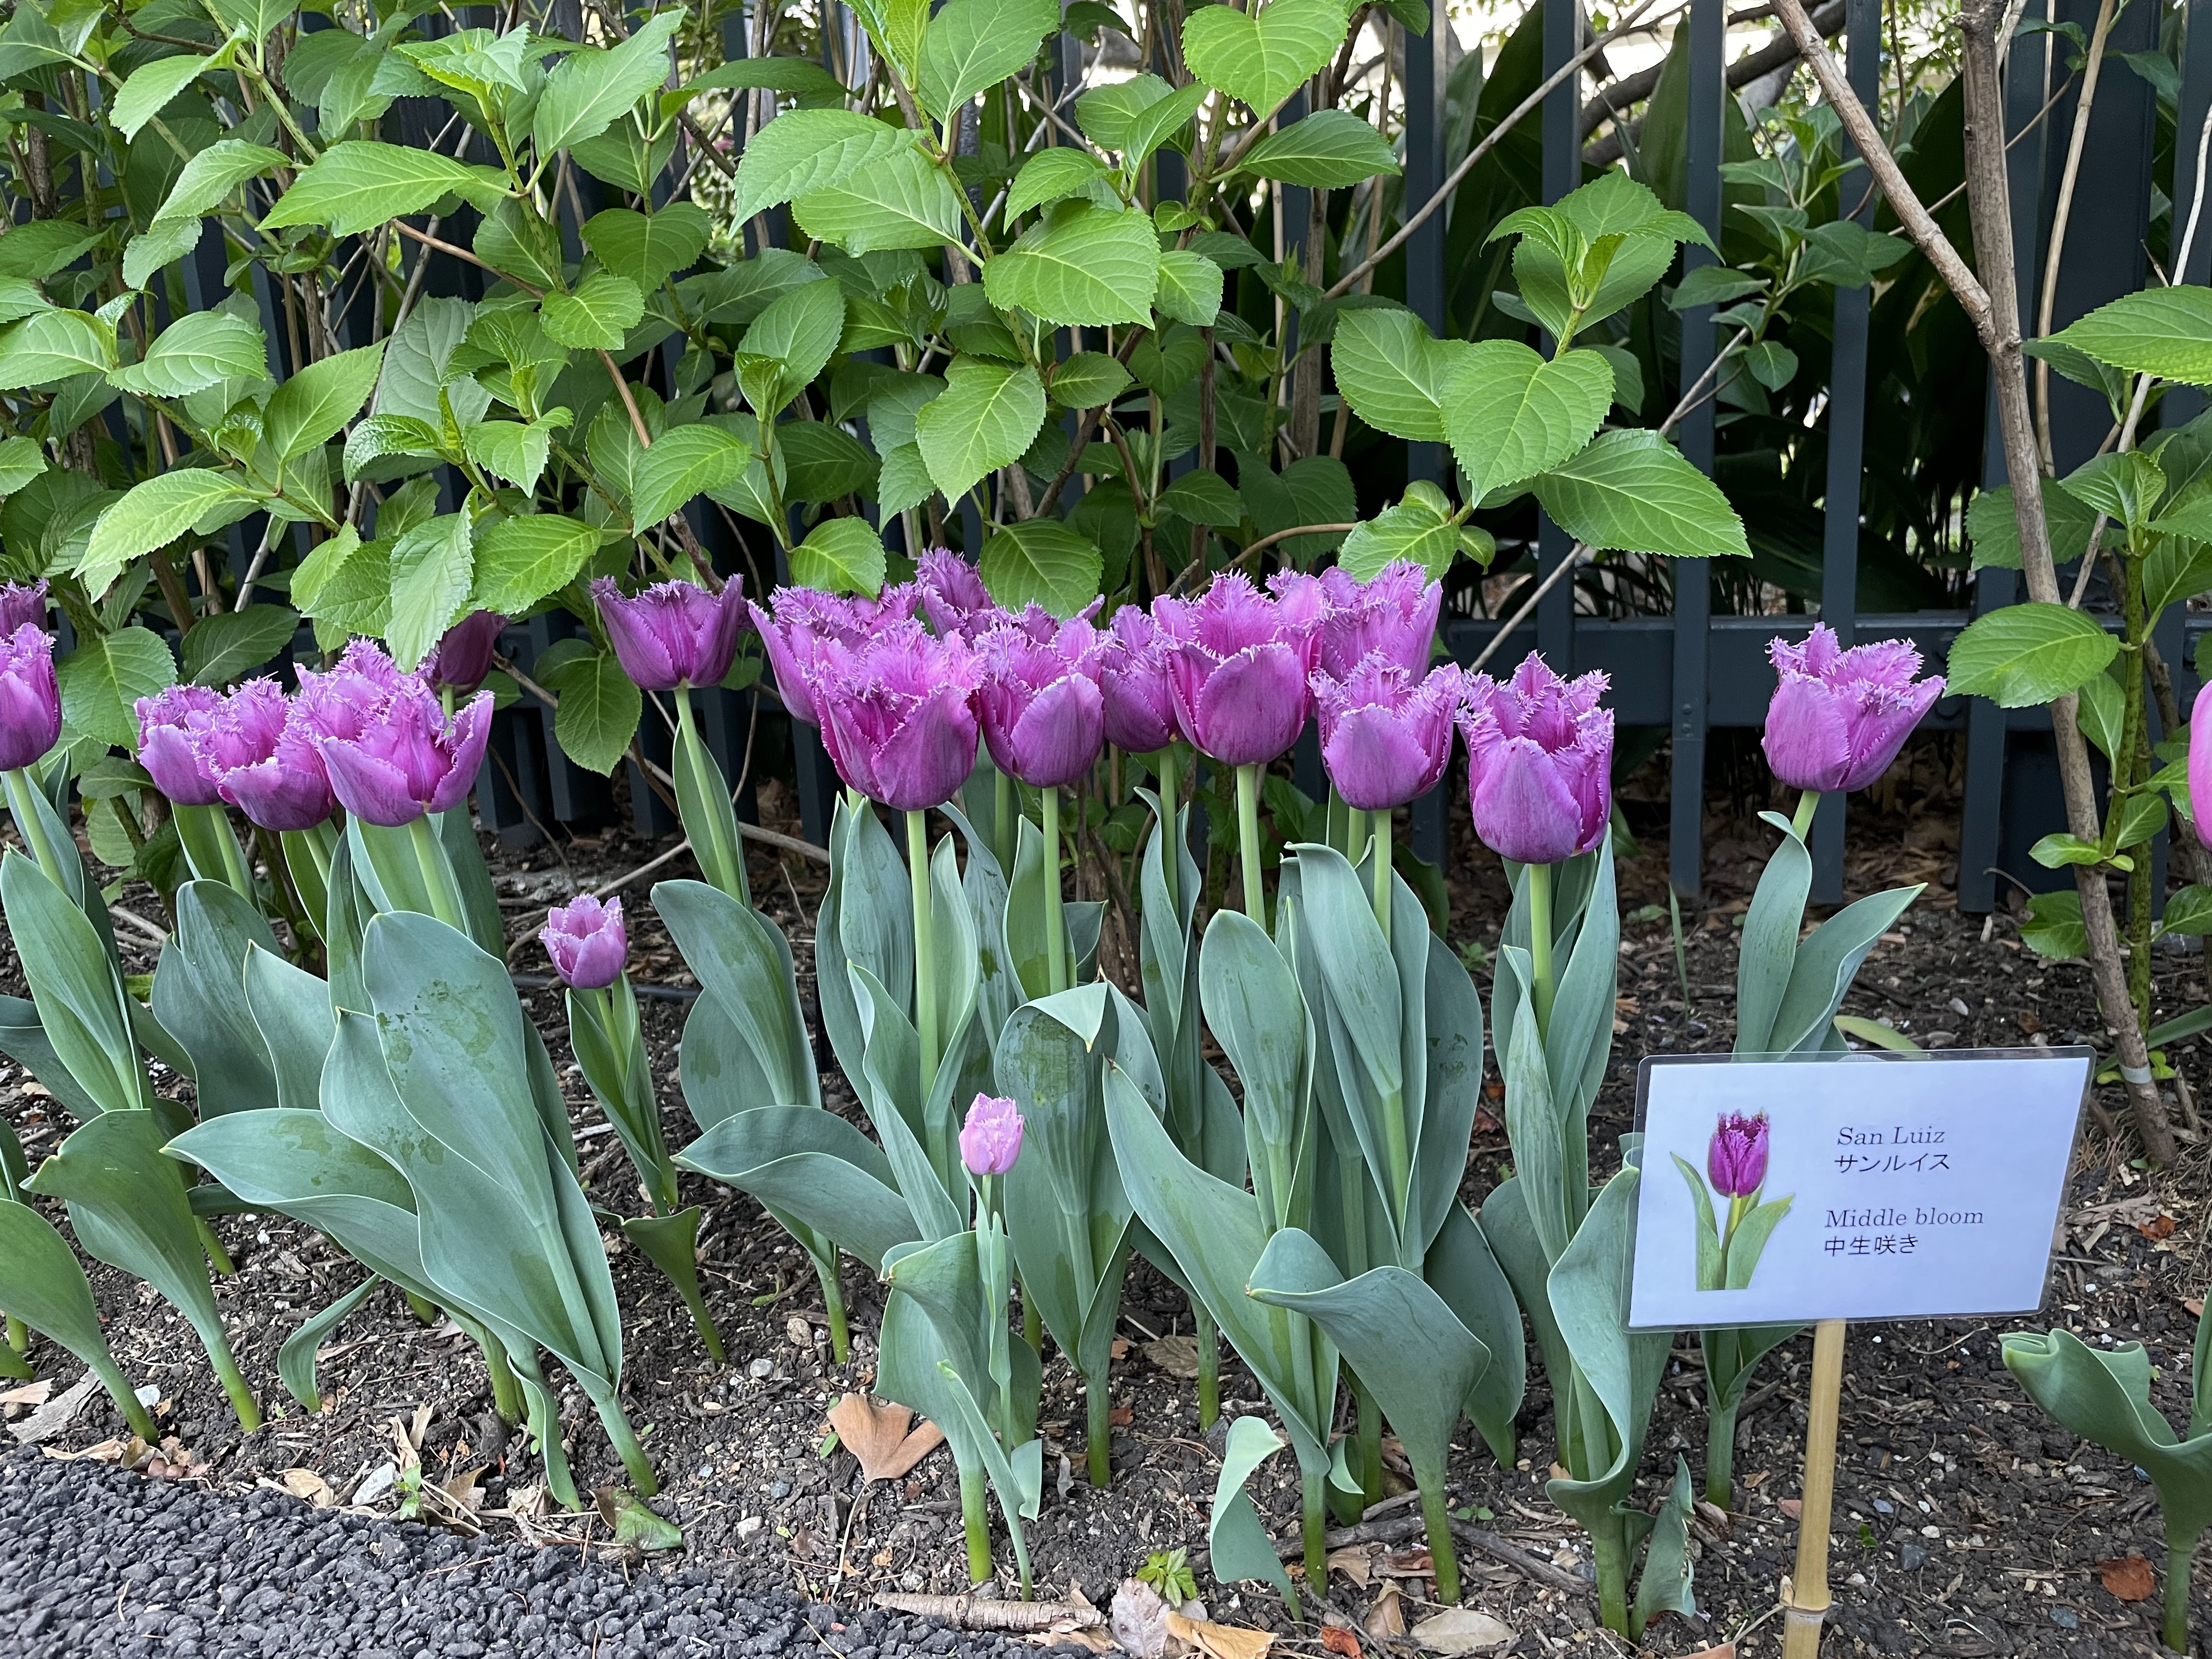 San Luiz tulips